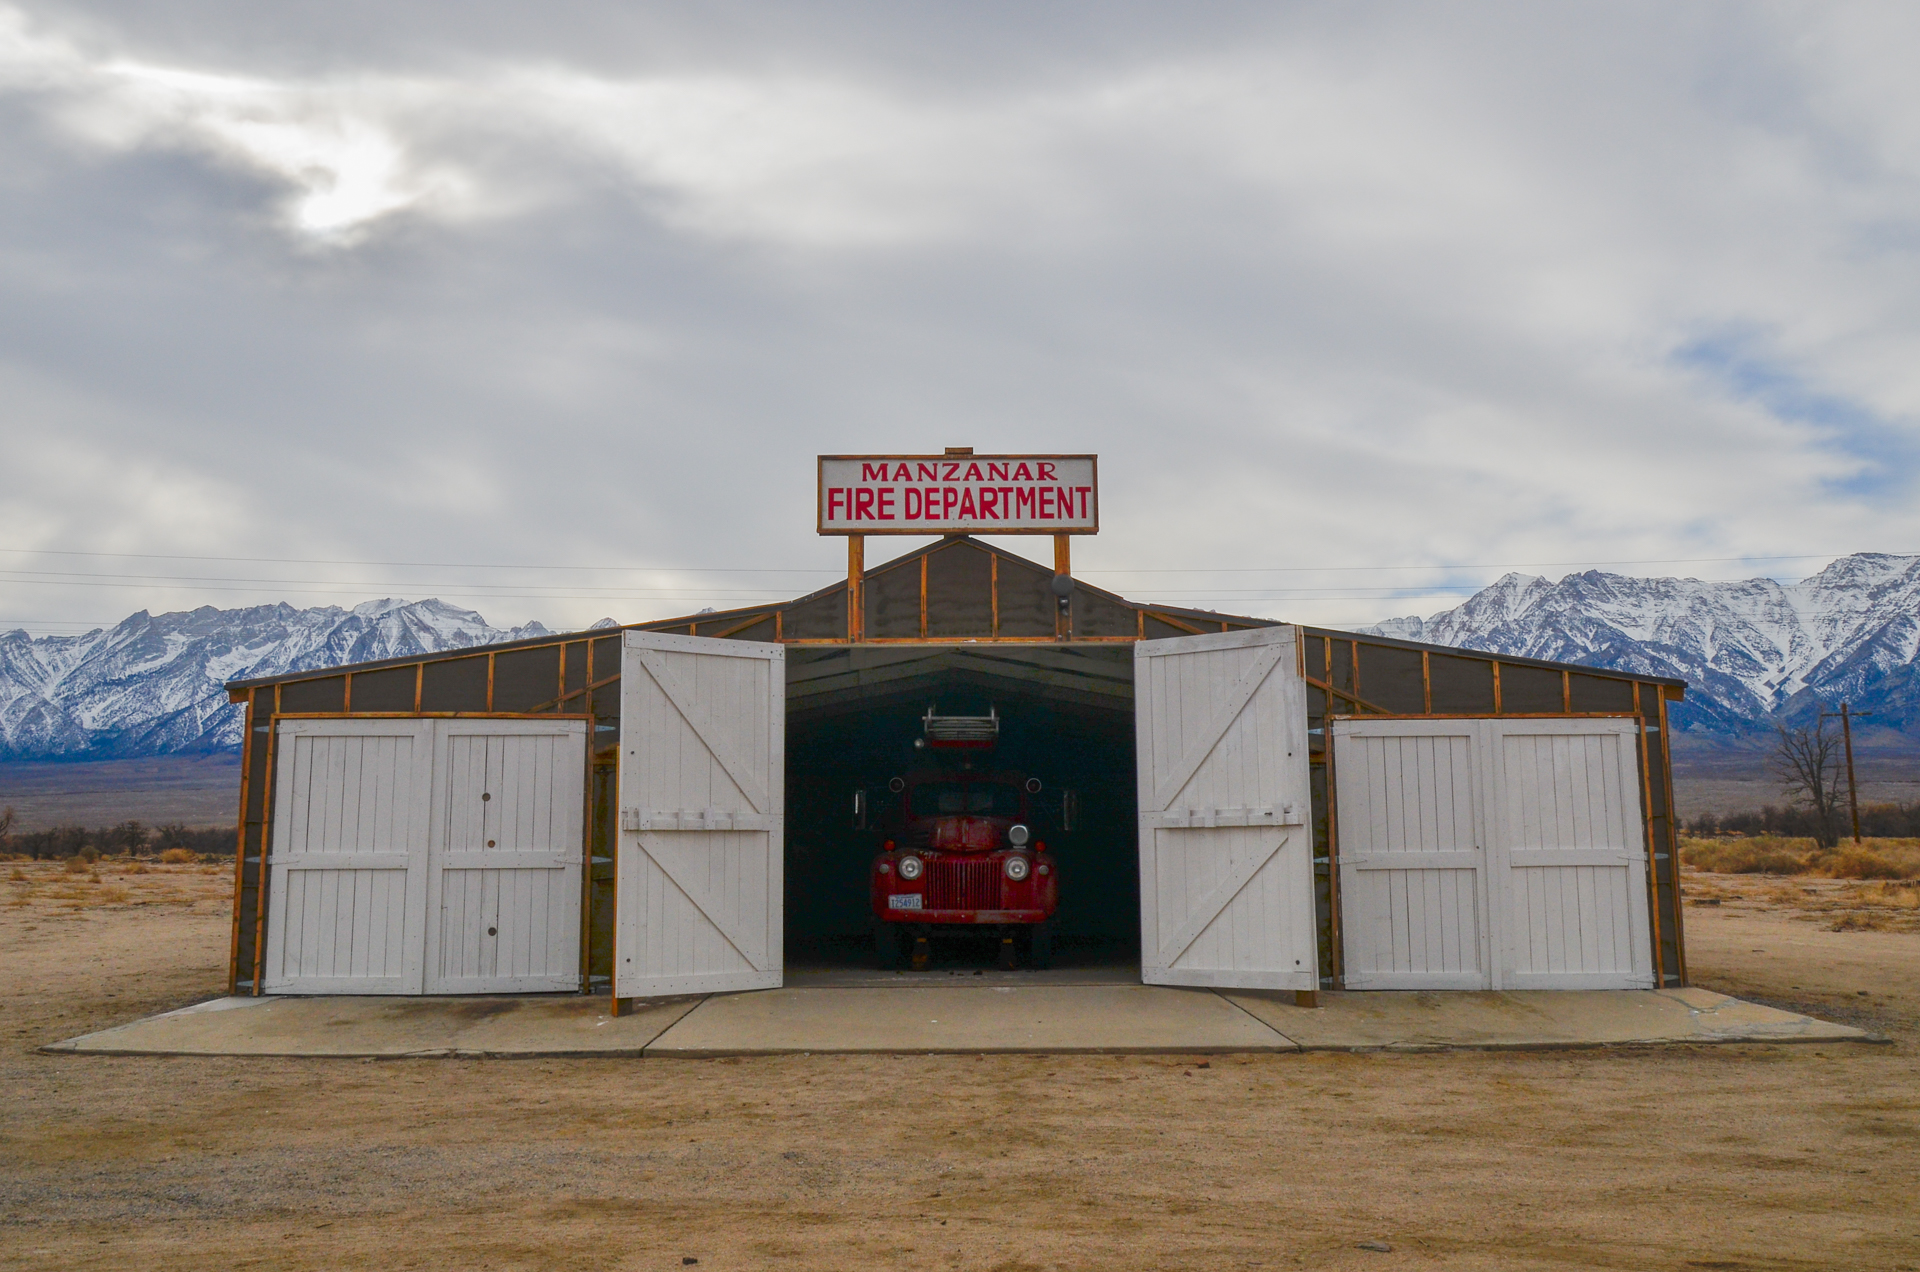   Manzanar Fire Department  ©Emmaleigh Hundley 